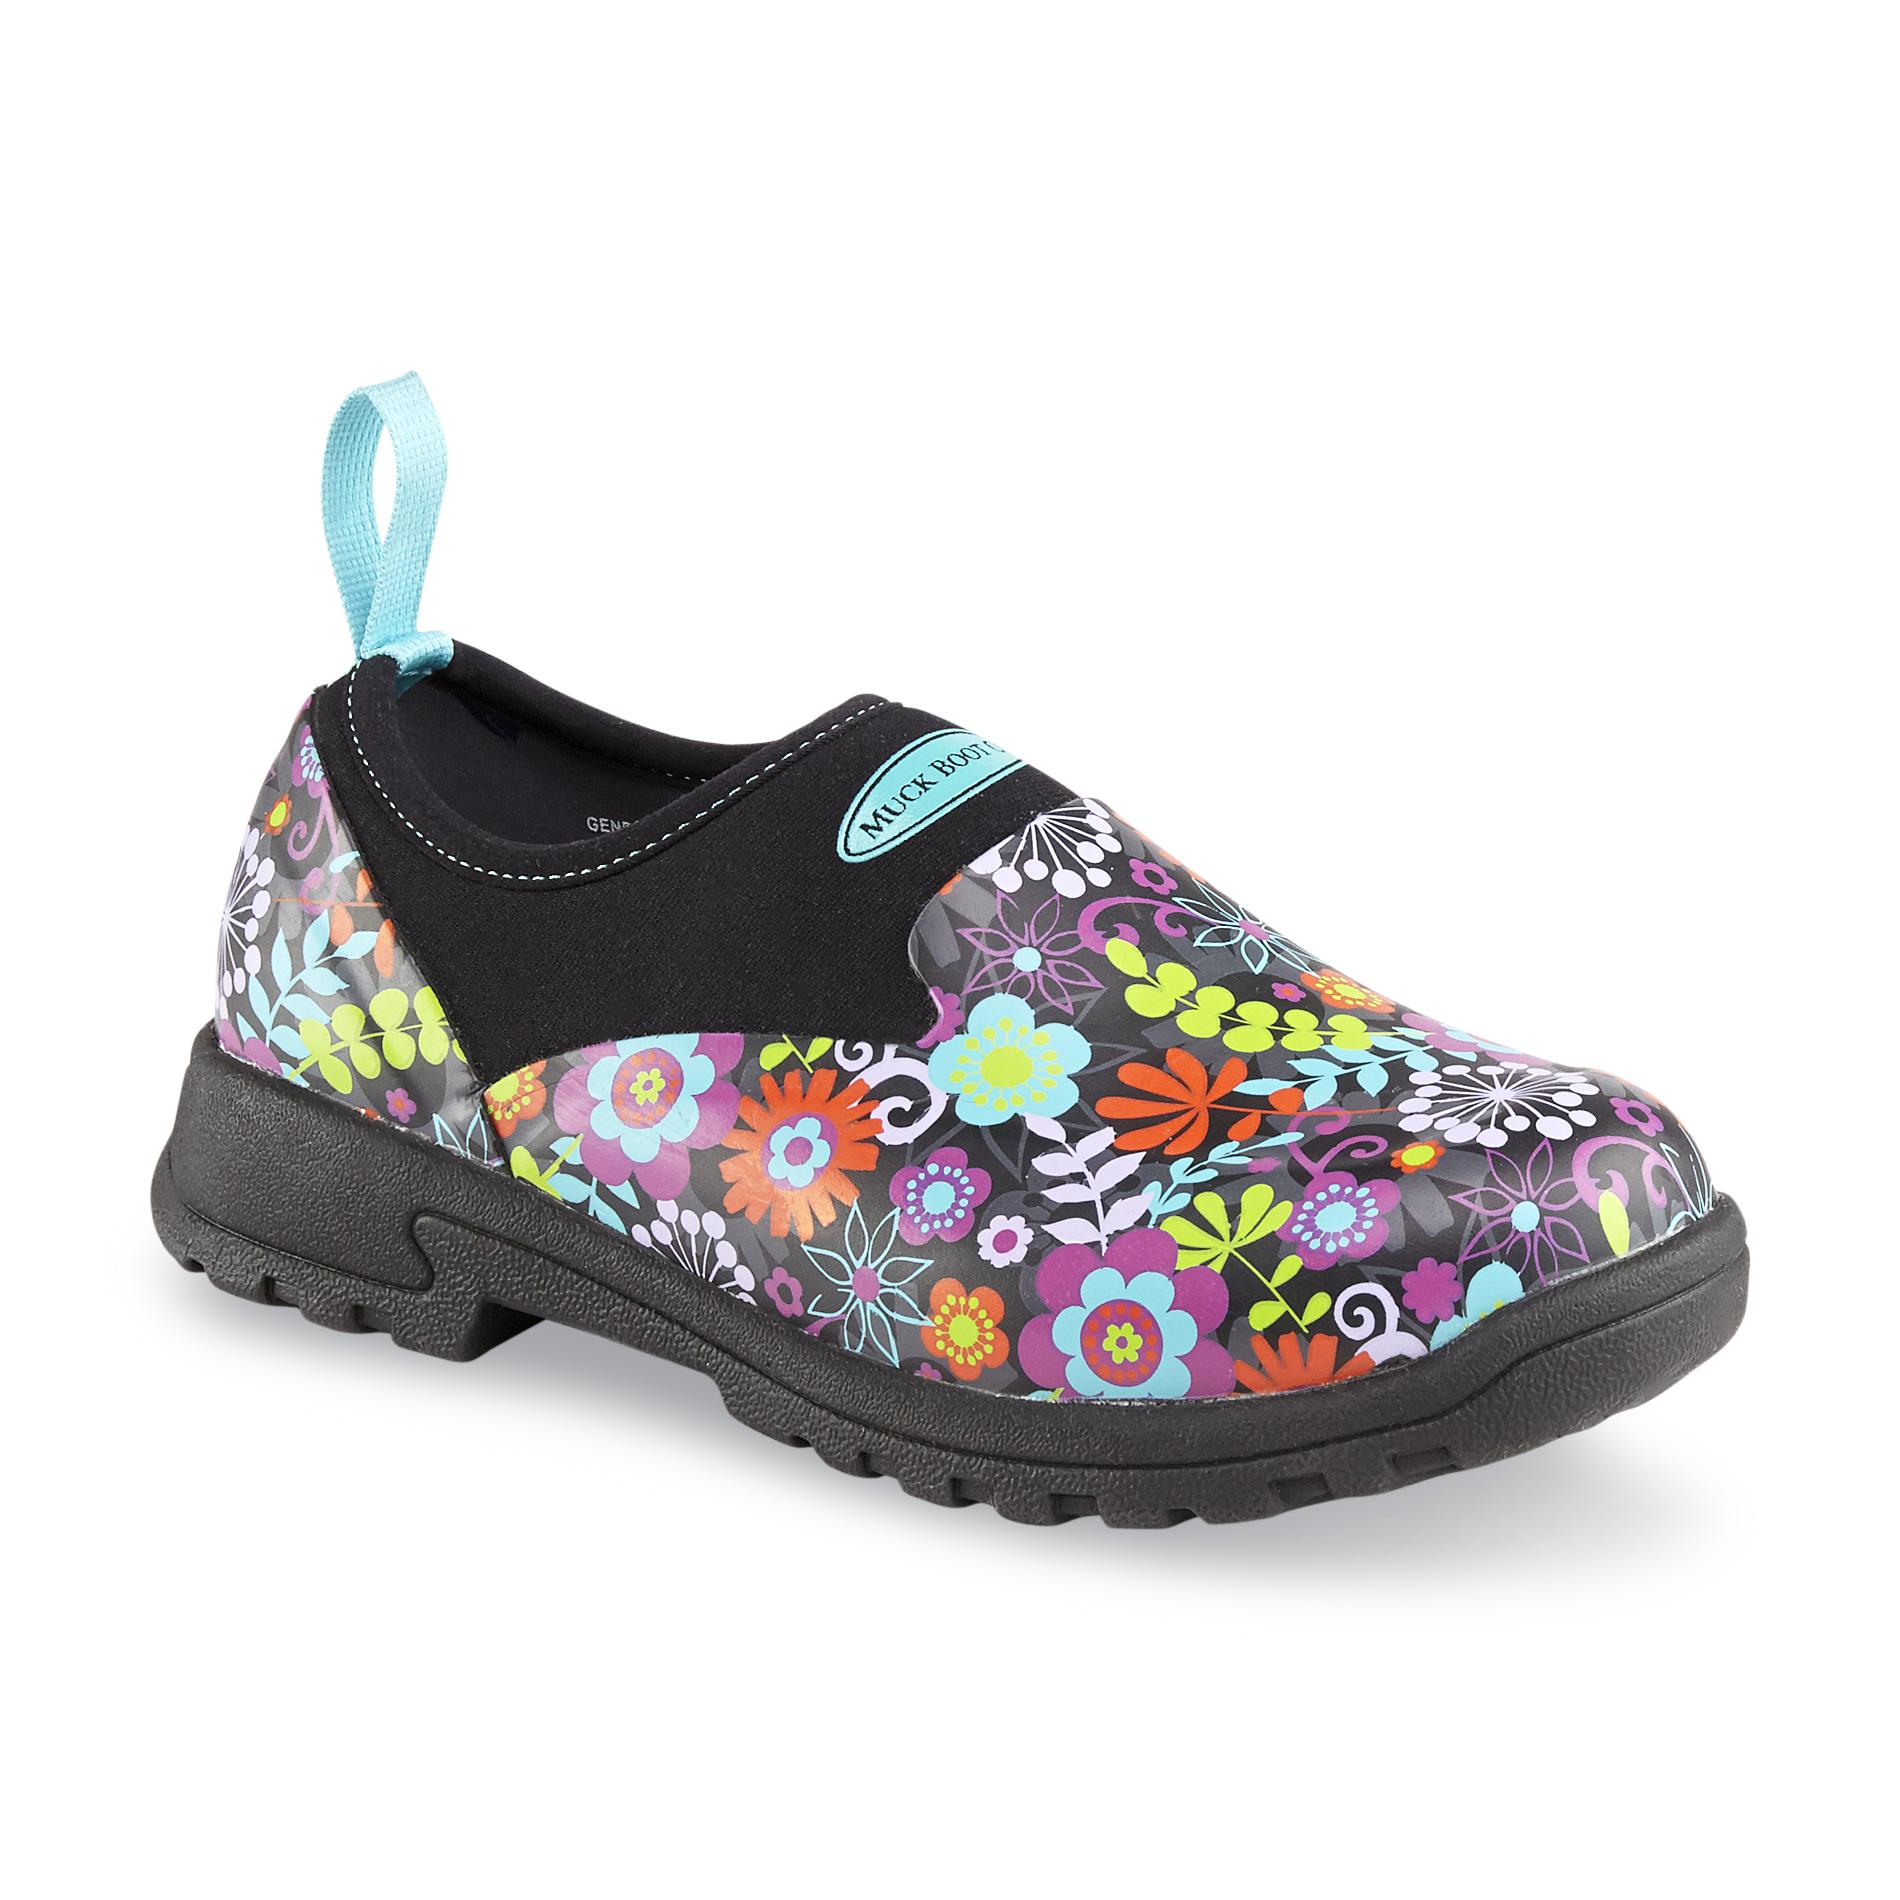 The Original Muck Boot Company Women's Breezy Low Black/Floral Rain Shoe